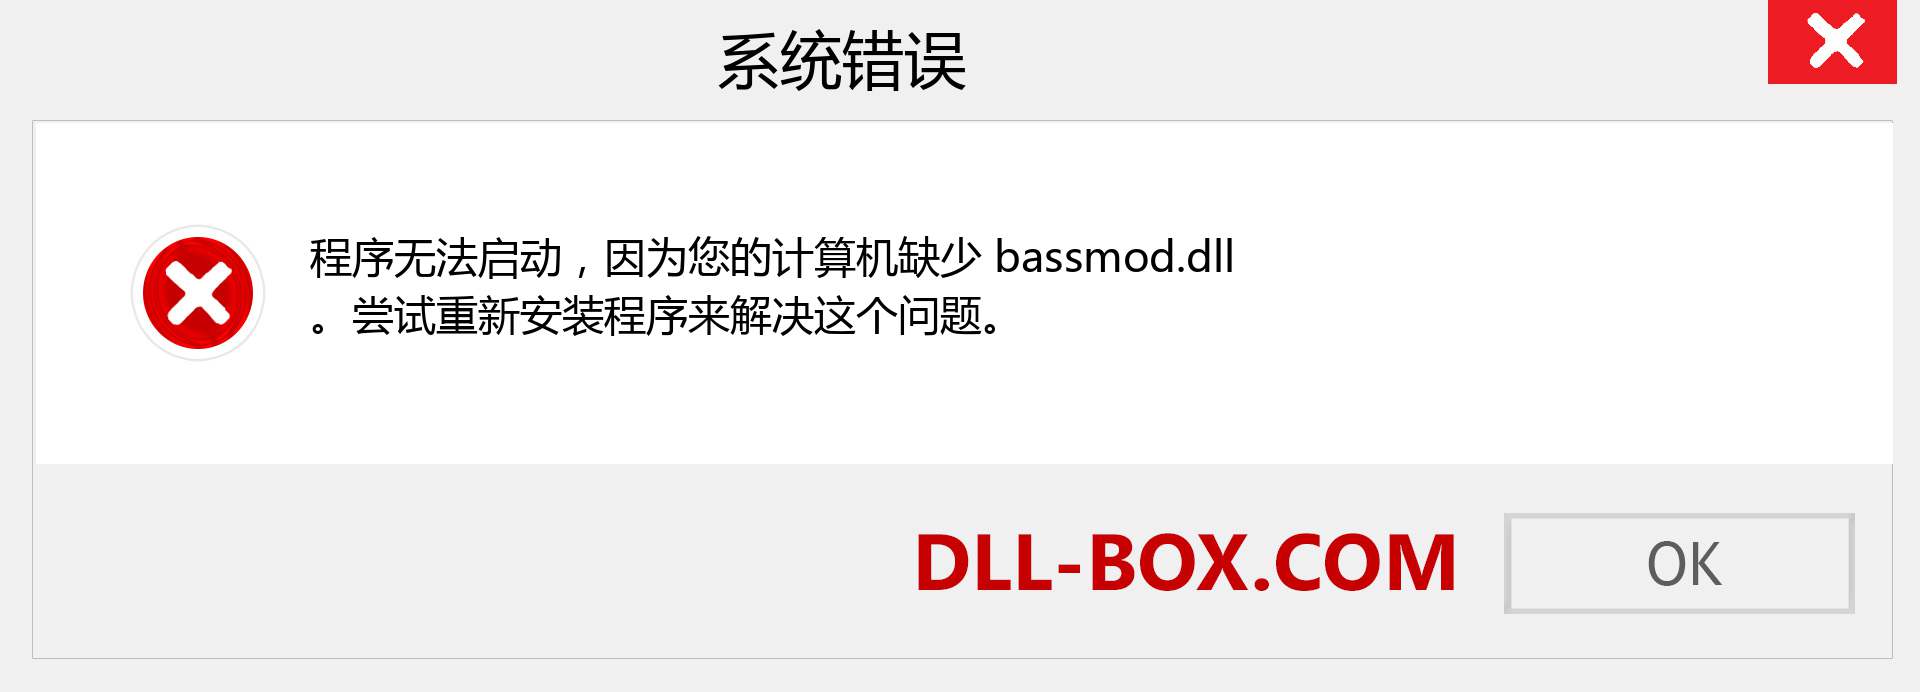 bassmod.dll 文件丢失？。 适用于 Windows 7、8、10 的下载 - 修复 Windows、照片、图像上的 bassmod dll 丢失错误